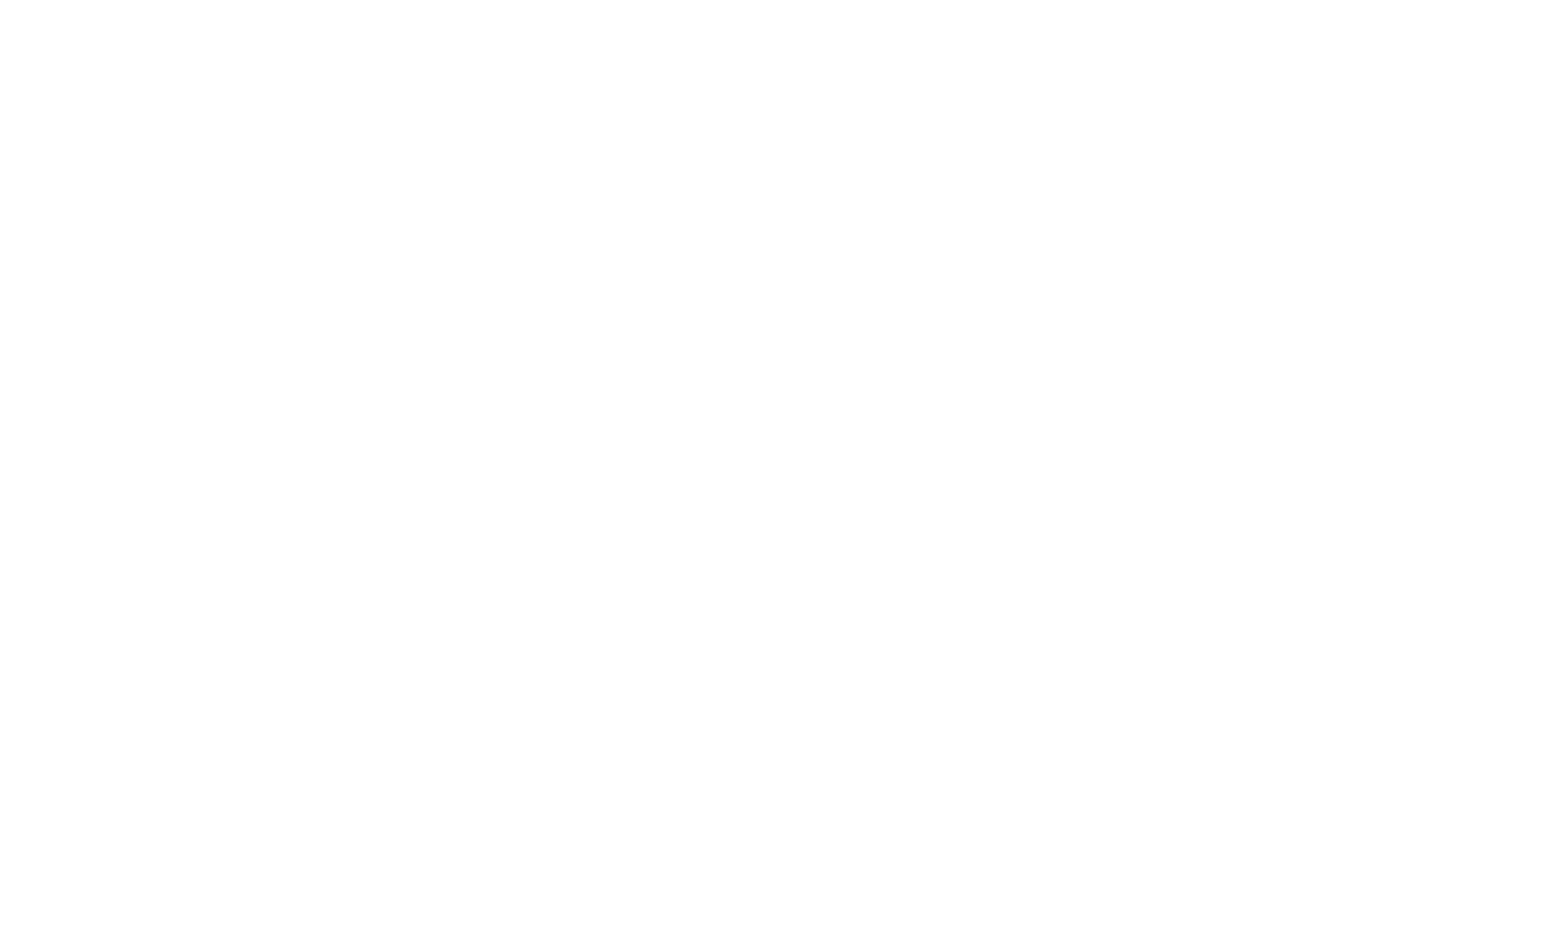 Edenred logo large for dark backgrounds (transparent PNG)